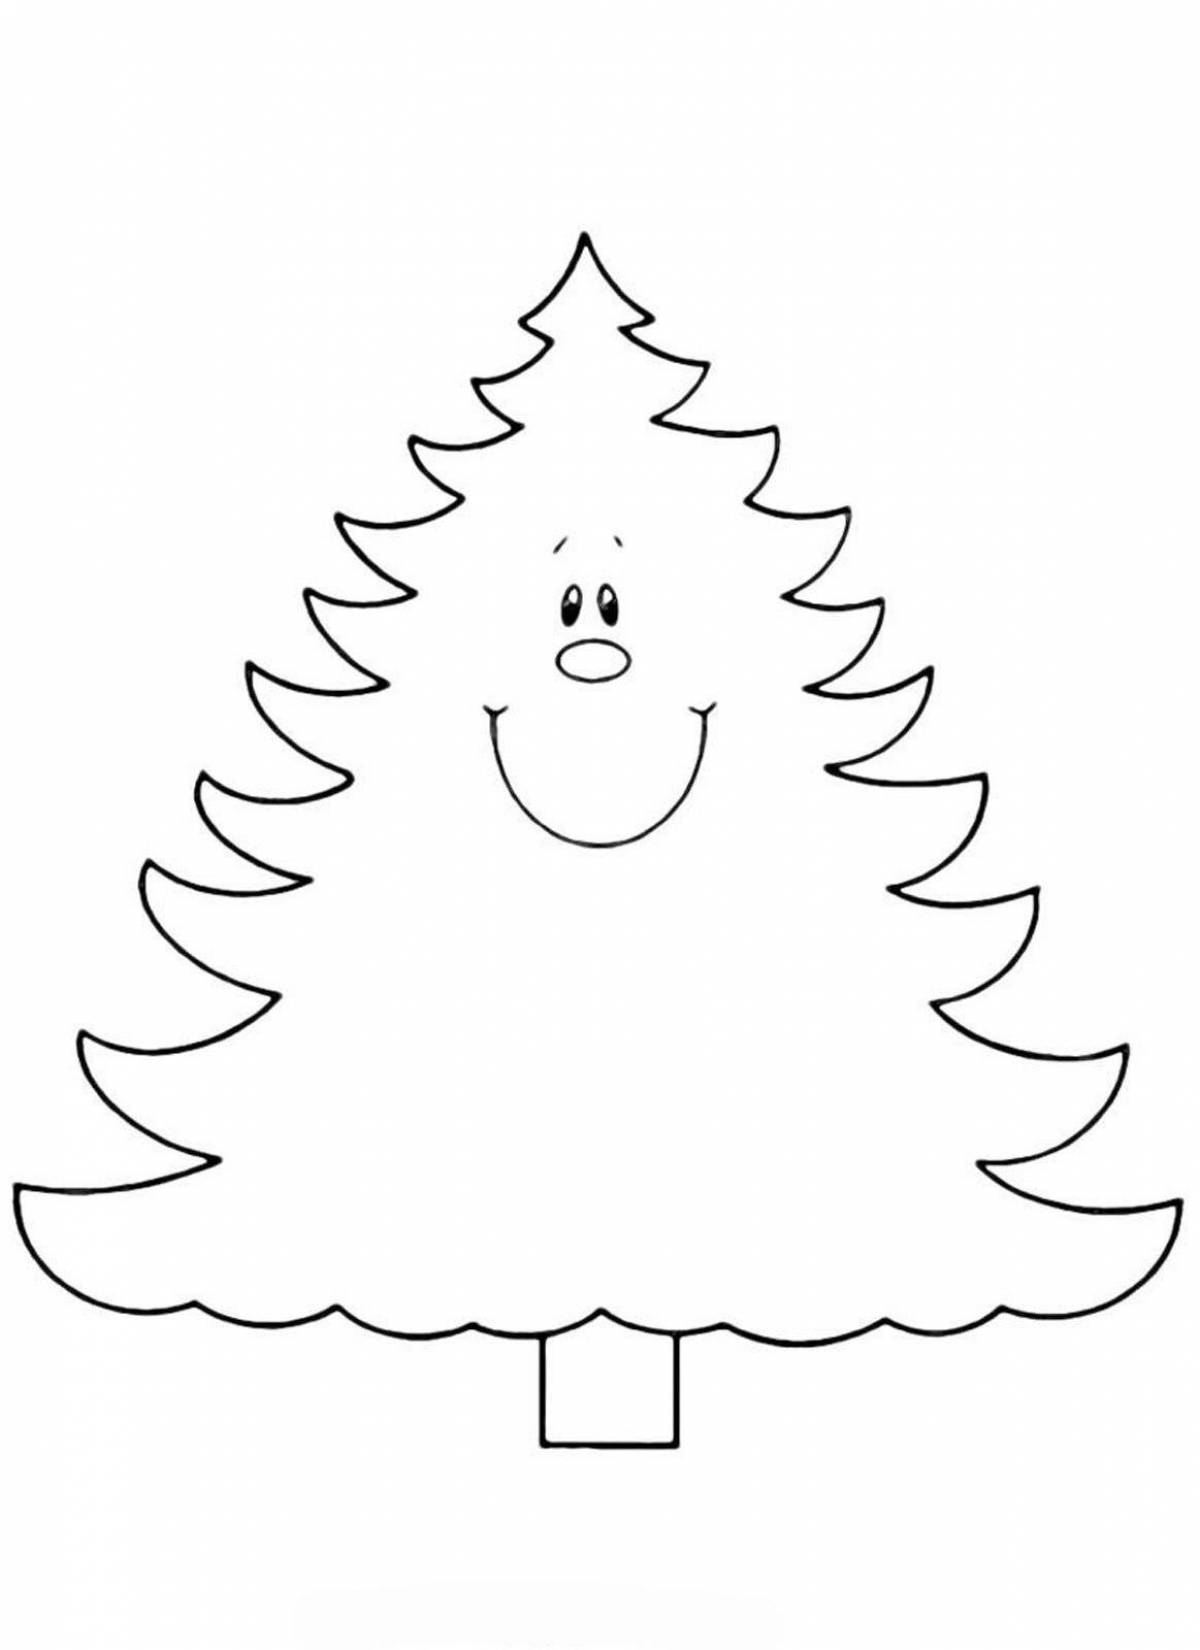 Цветная раскраска «рождественская елка» для дошкольников 2-3 лет